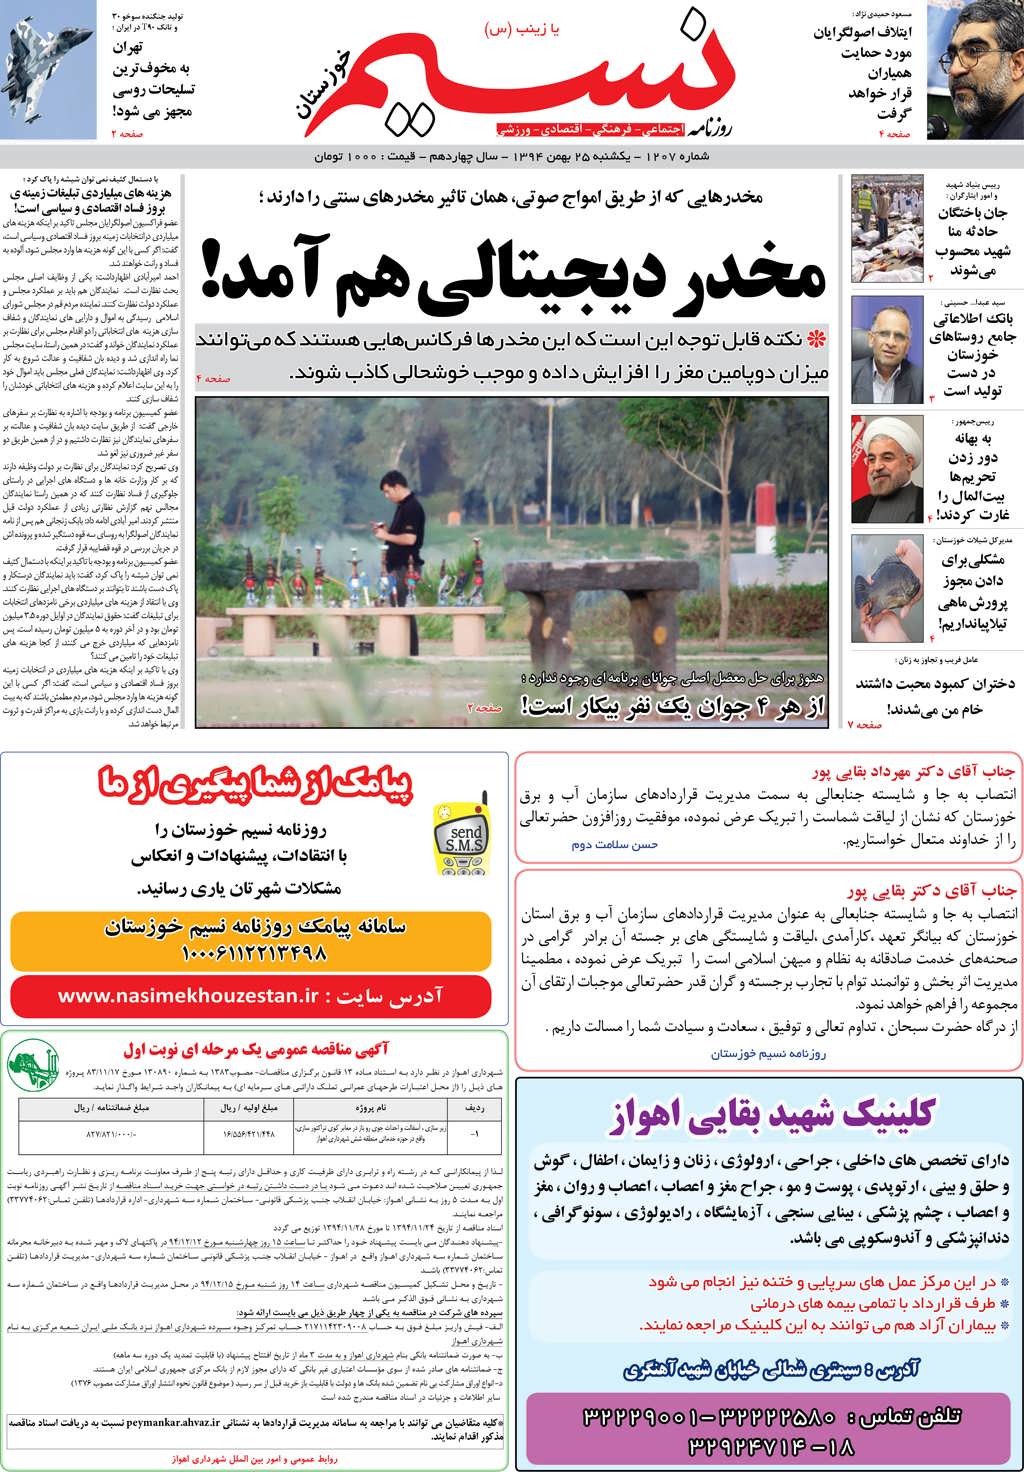 صفحه اصلی روزنامه نسیم شماره 1207